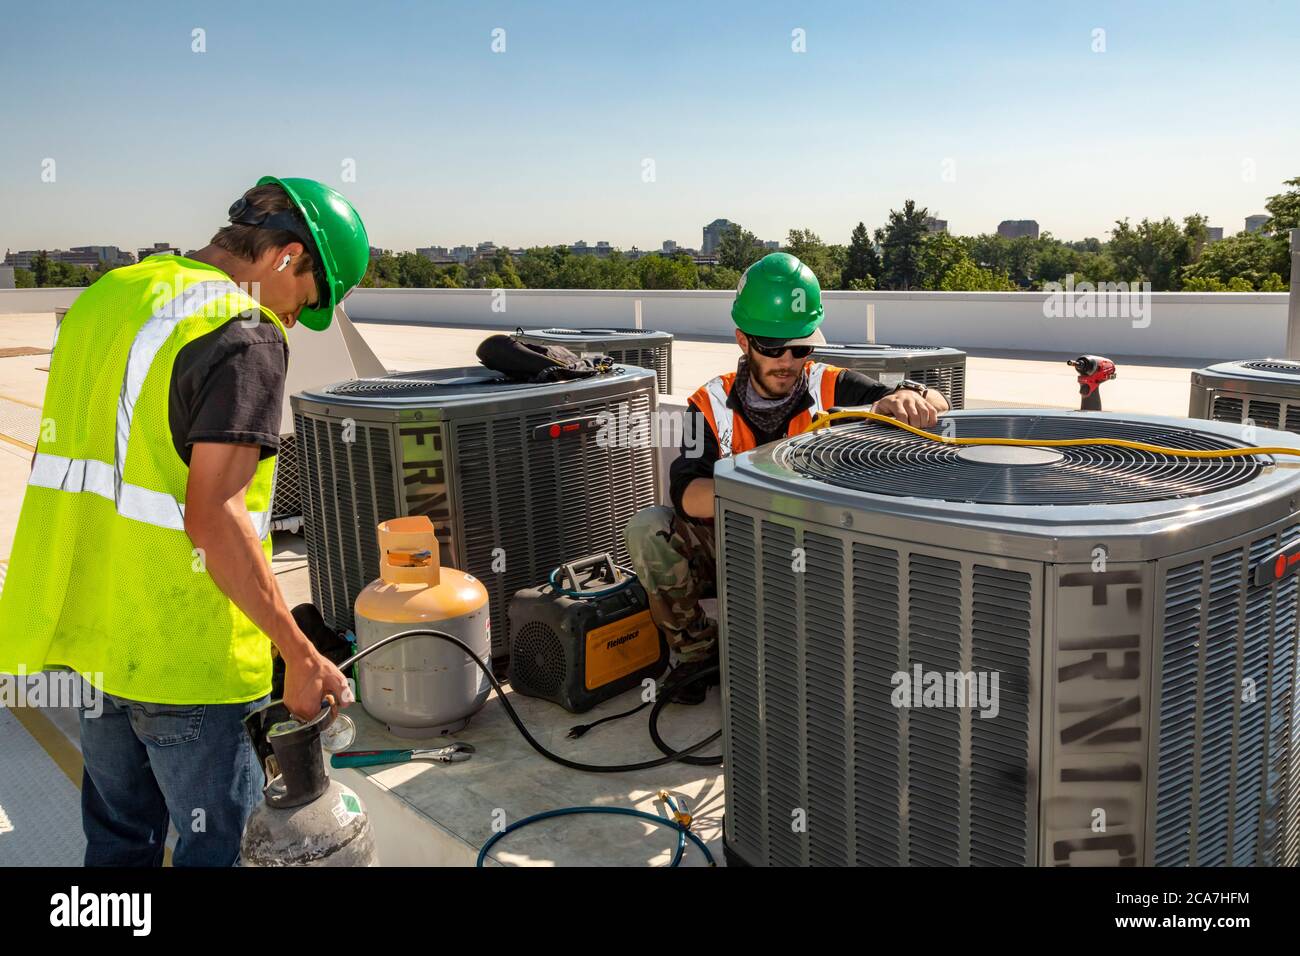 Denver, Colorado - i tecnici lavorano sull'impianto di climatizzazione sul tetto di un edificio a prezzi accessibili in costruzione. Foto Stock